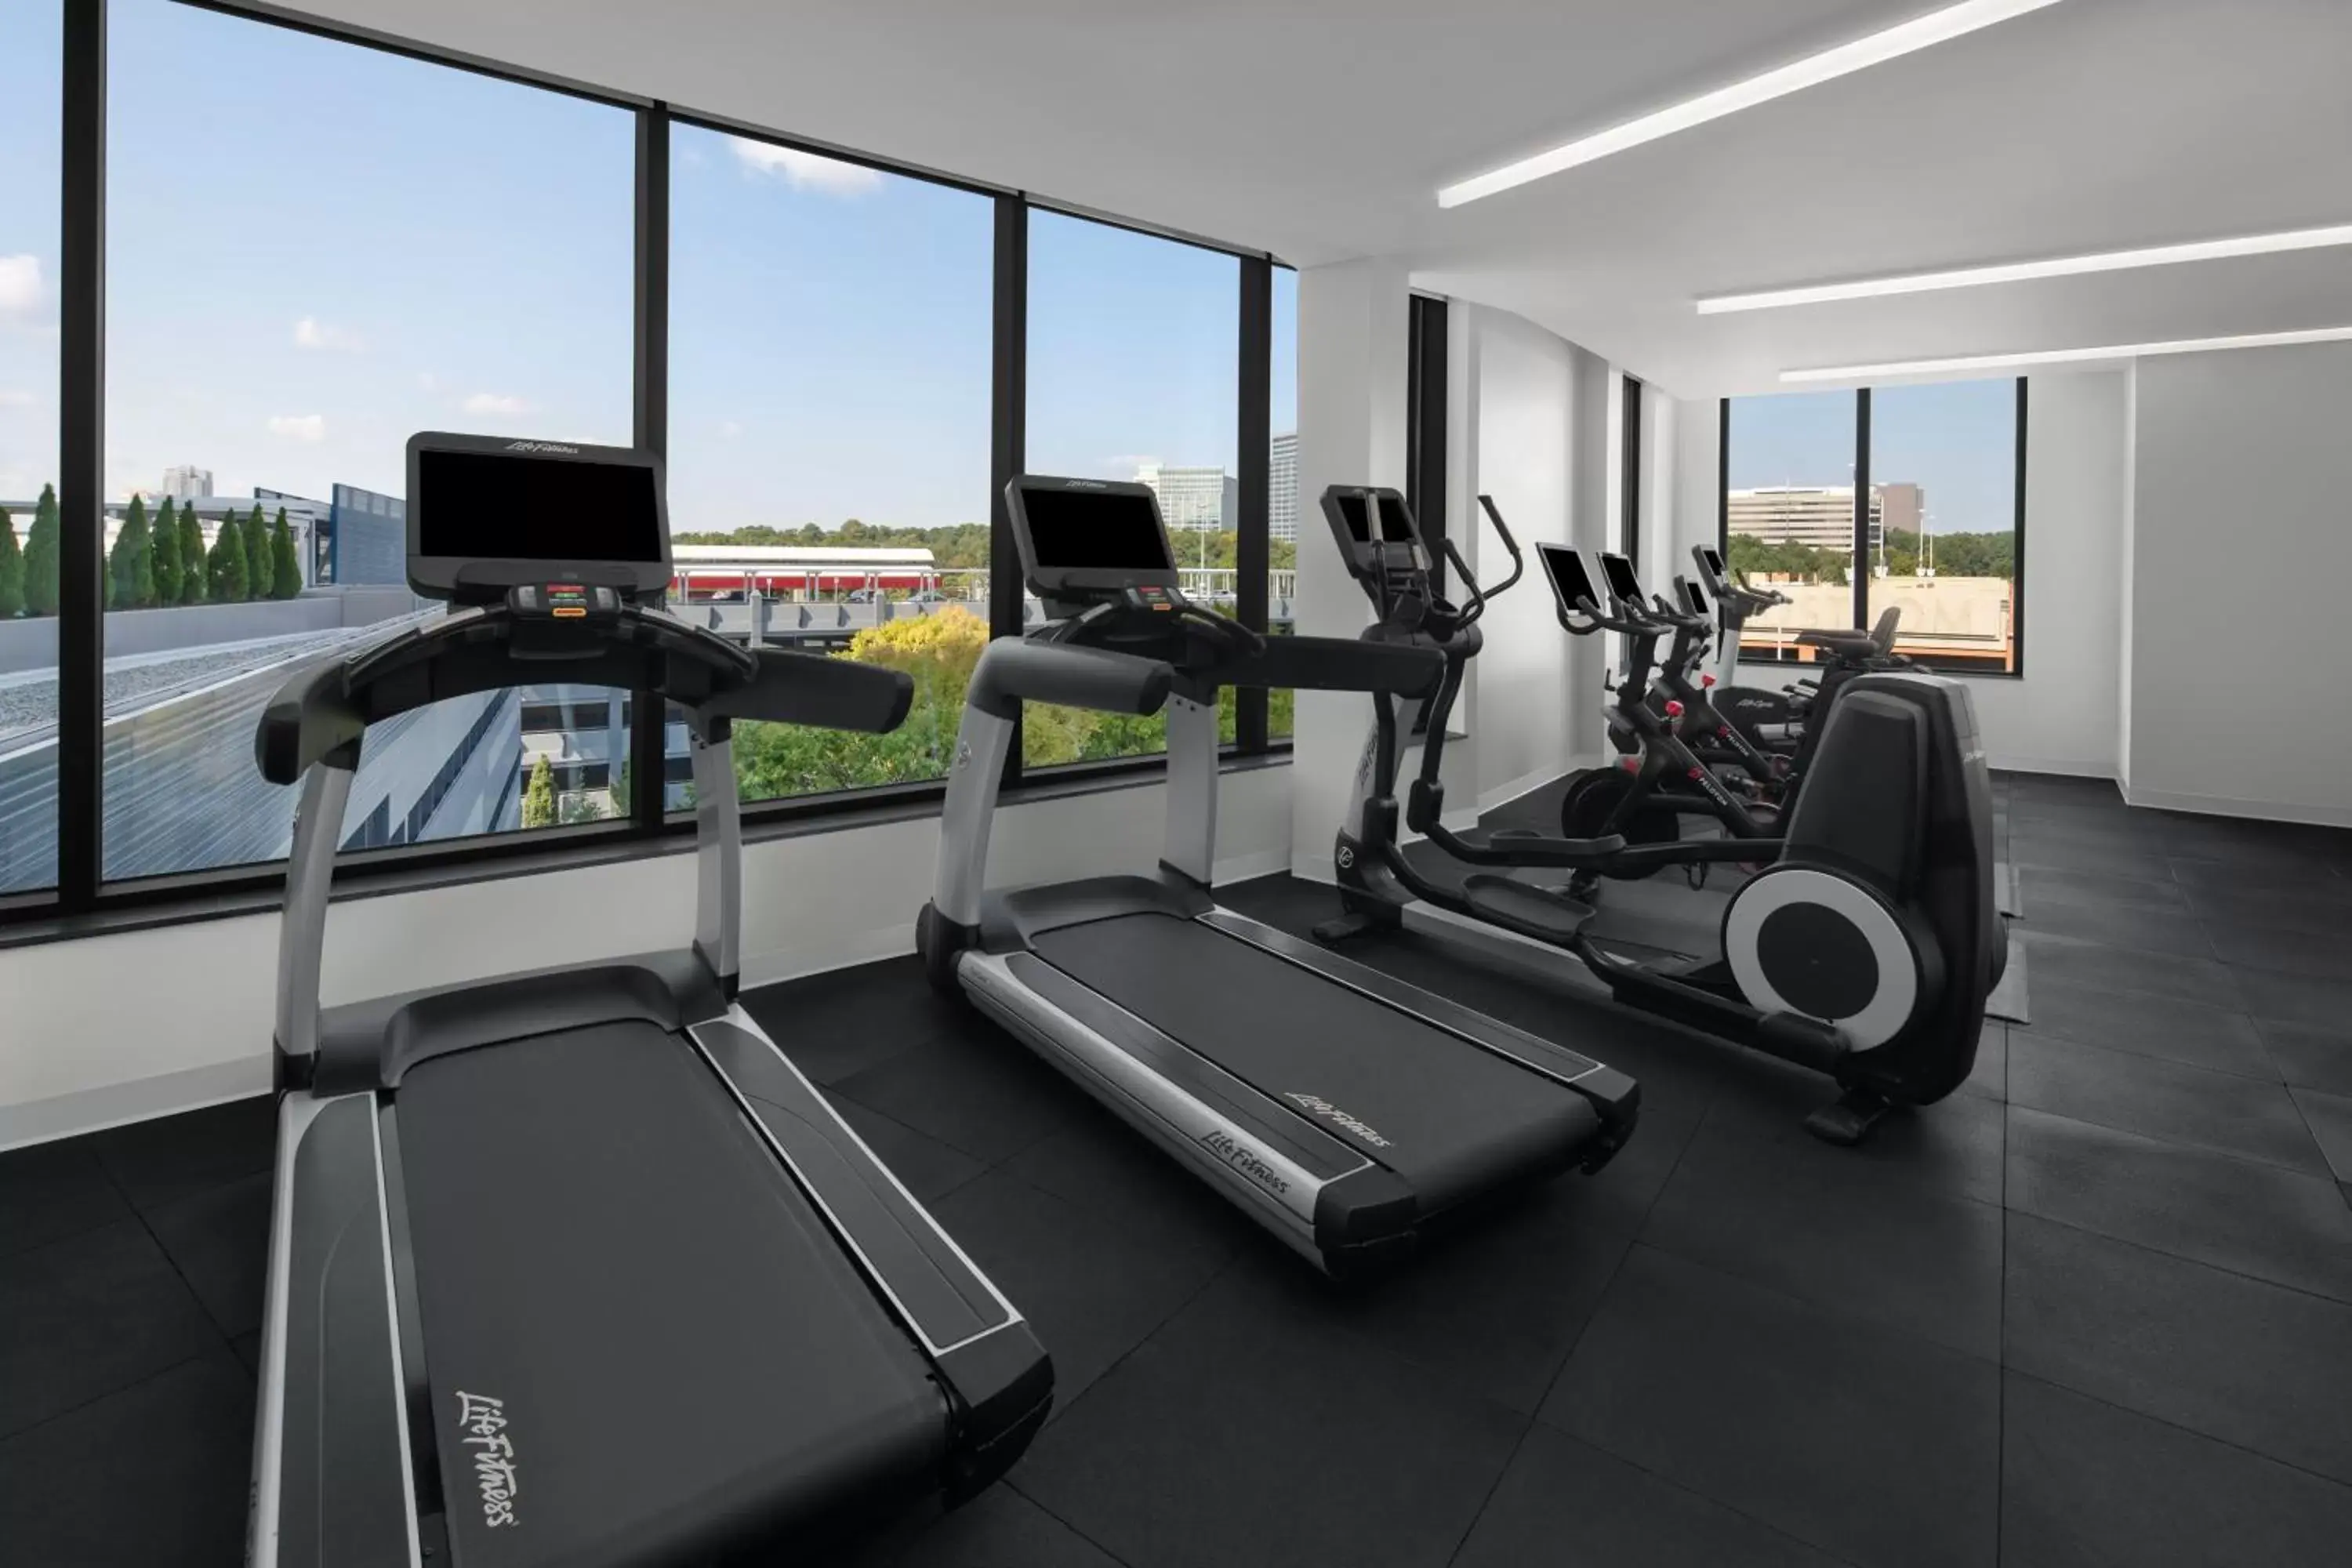 Fitness centre/facilities, Fitness Center/Facilities in Hyatt Place Atlanta/Perimeter Center